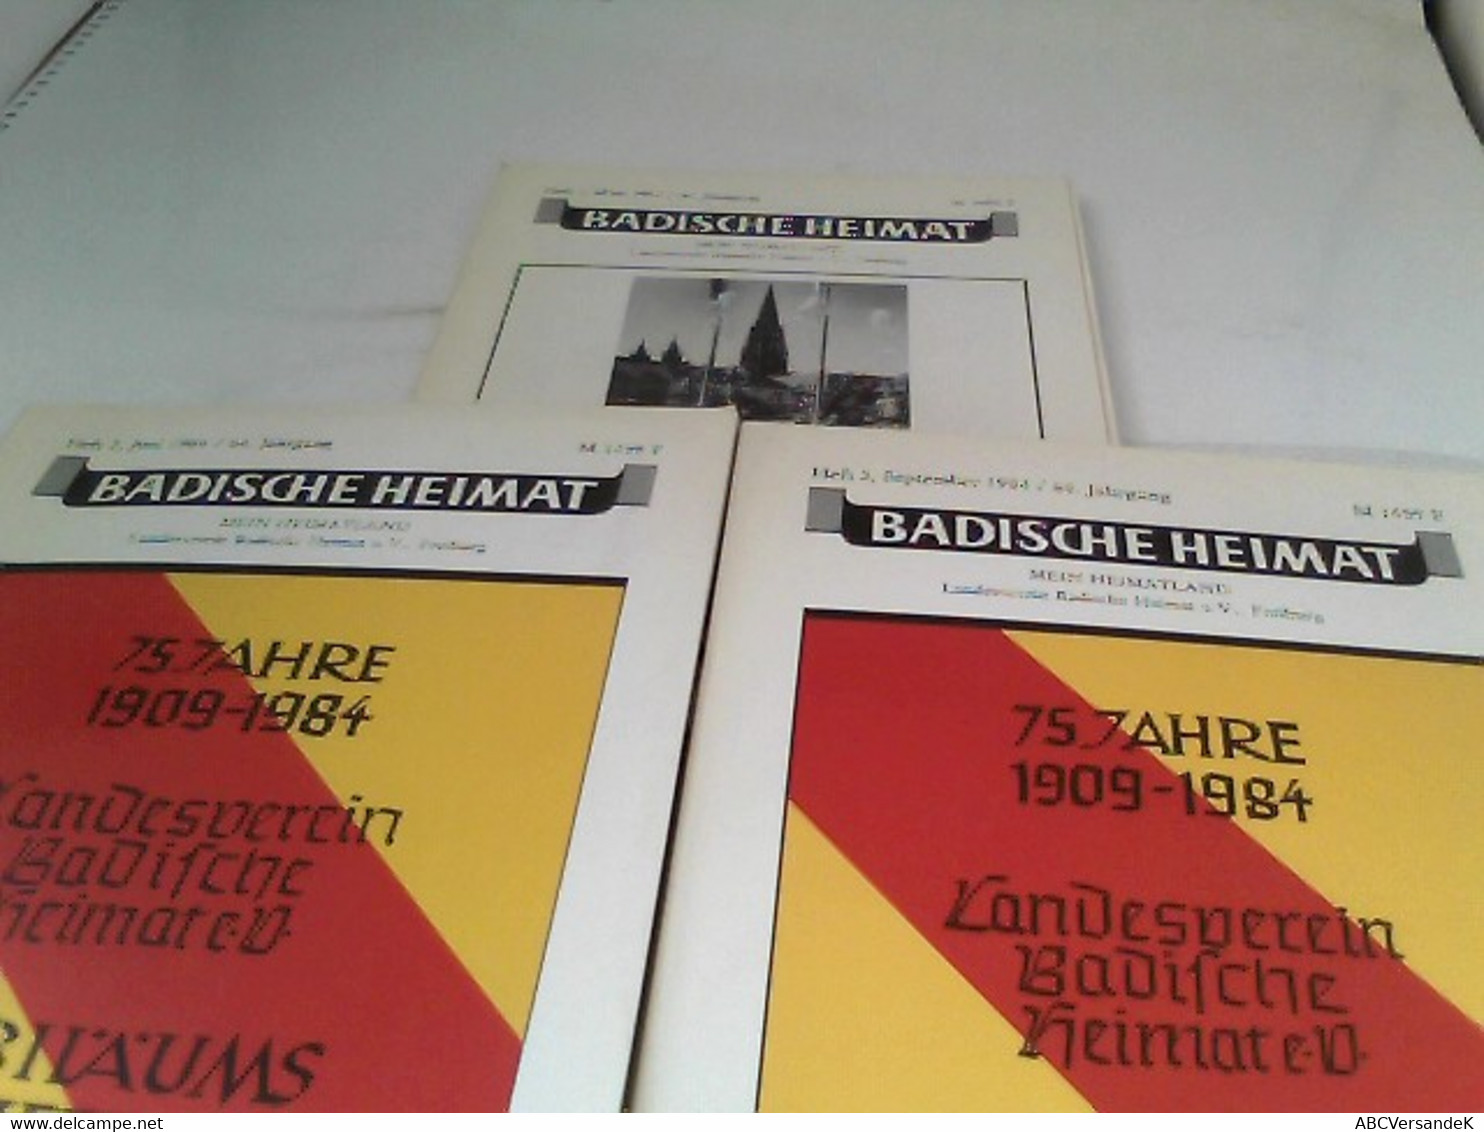 Badische Heimat - Mein Heimatland 64.Jahrgang 1984 Heft 1-3, Heft 4 Fehlt - Alemania Todos